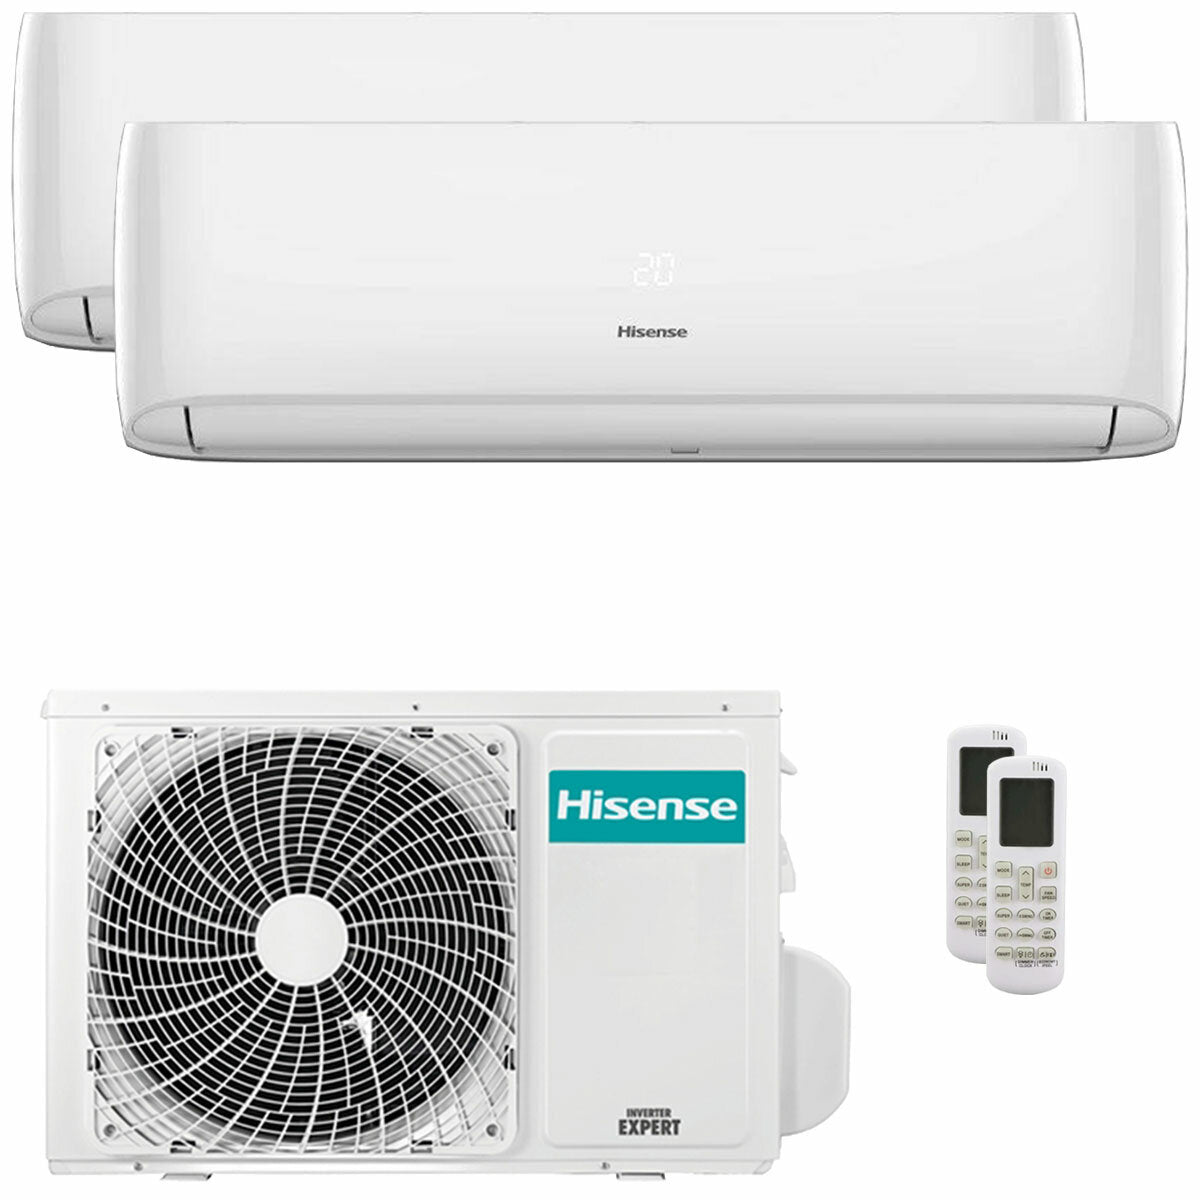 Hisense Hi-Comfort Dual-Split-Klimaanlage 7000+18000 BTU Inverter A++ WLAN-Außeneinheit 5,5 kW